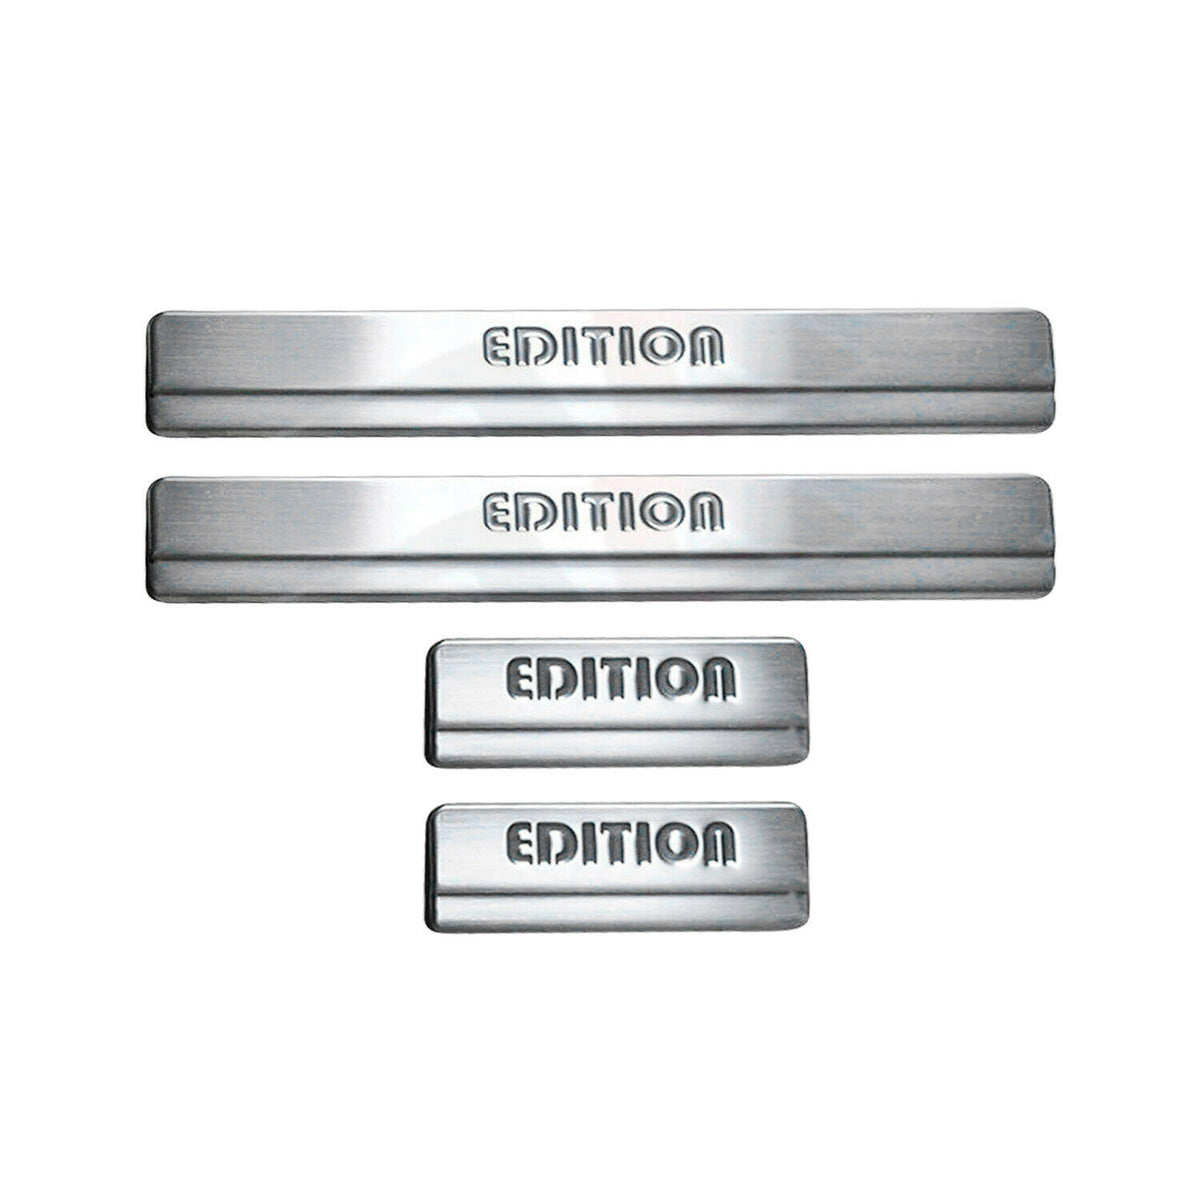 Für Ford Fusion 2002-2012 Edition Chrom Einstiegsleisten Türschutz Edelstahl 4x